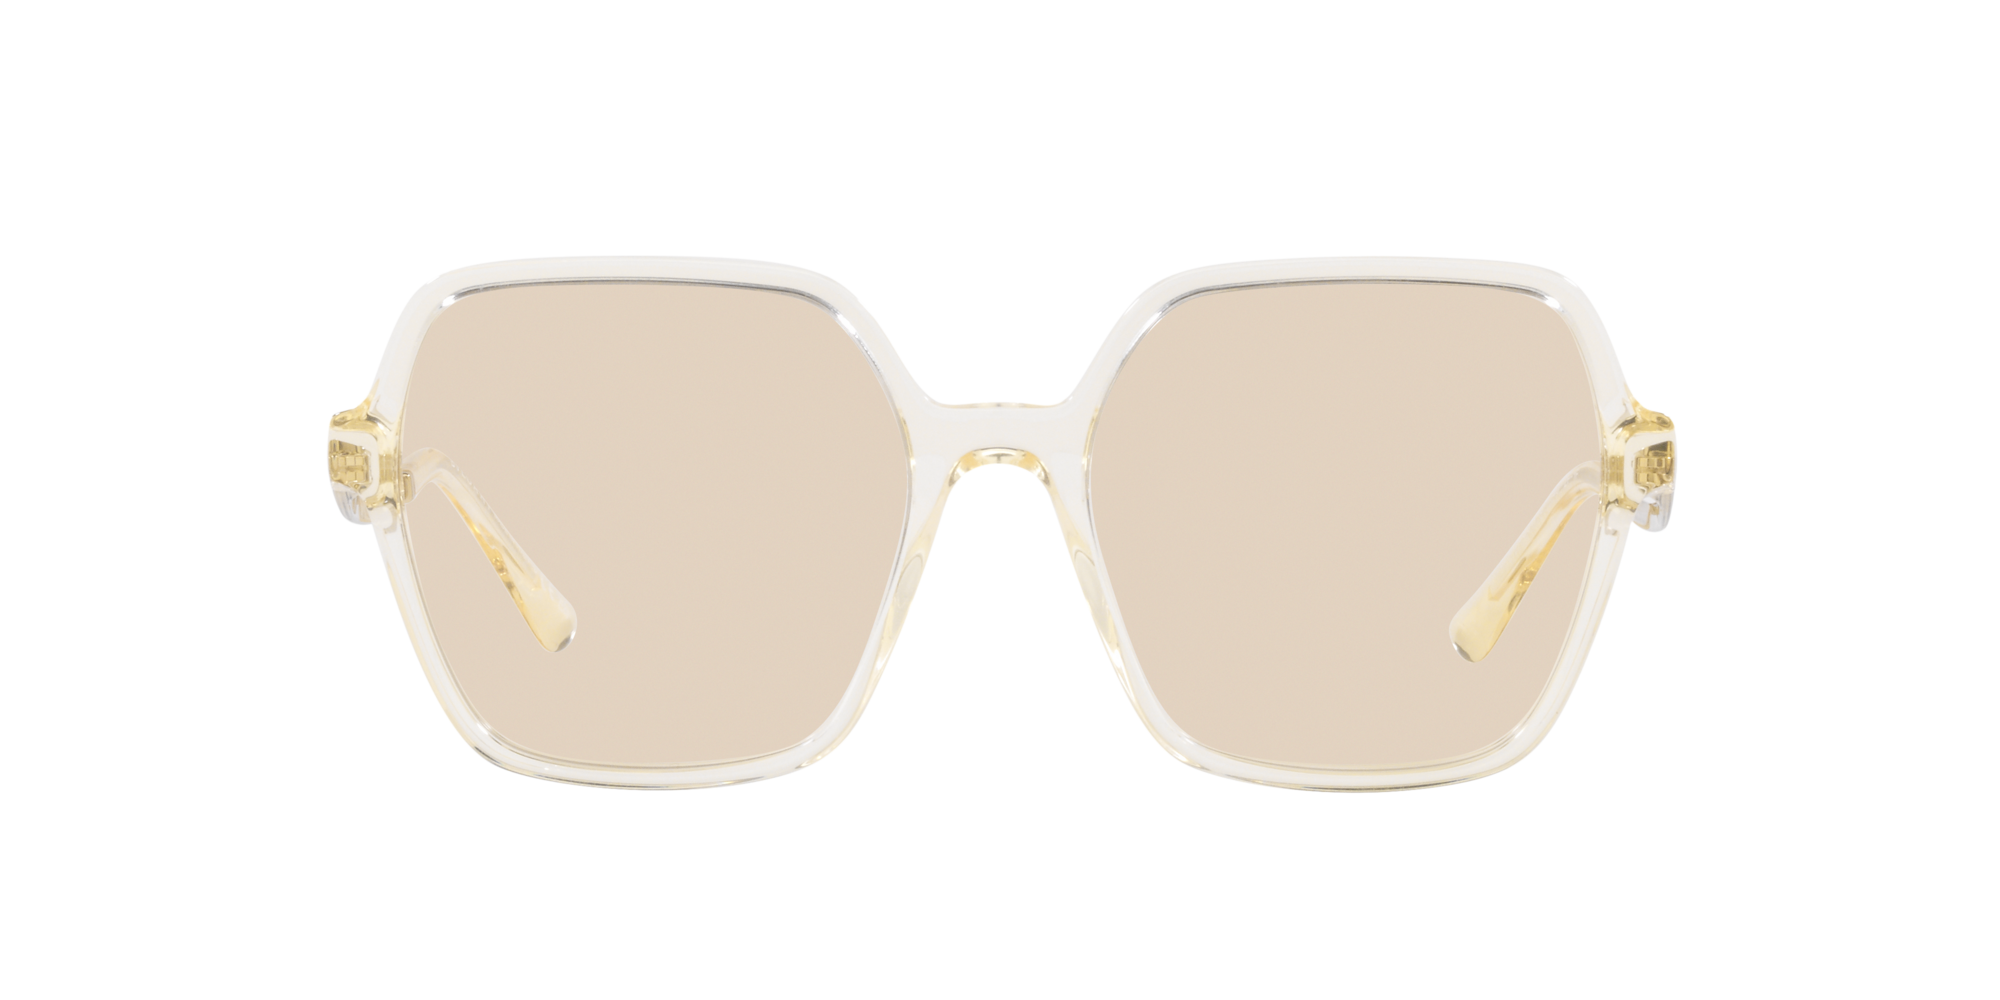 Sunglass Hut Richmond | Sunglasses for Men, Women & Kids